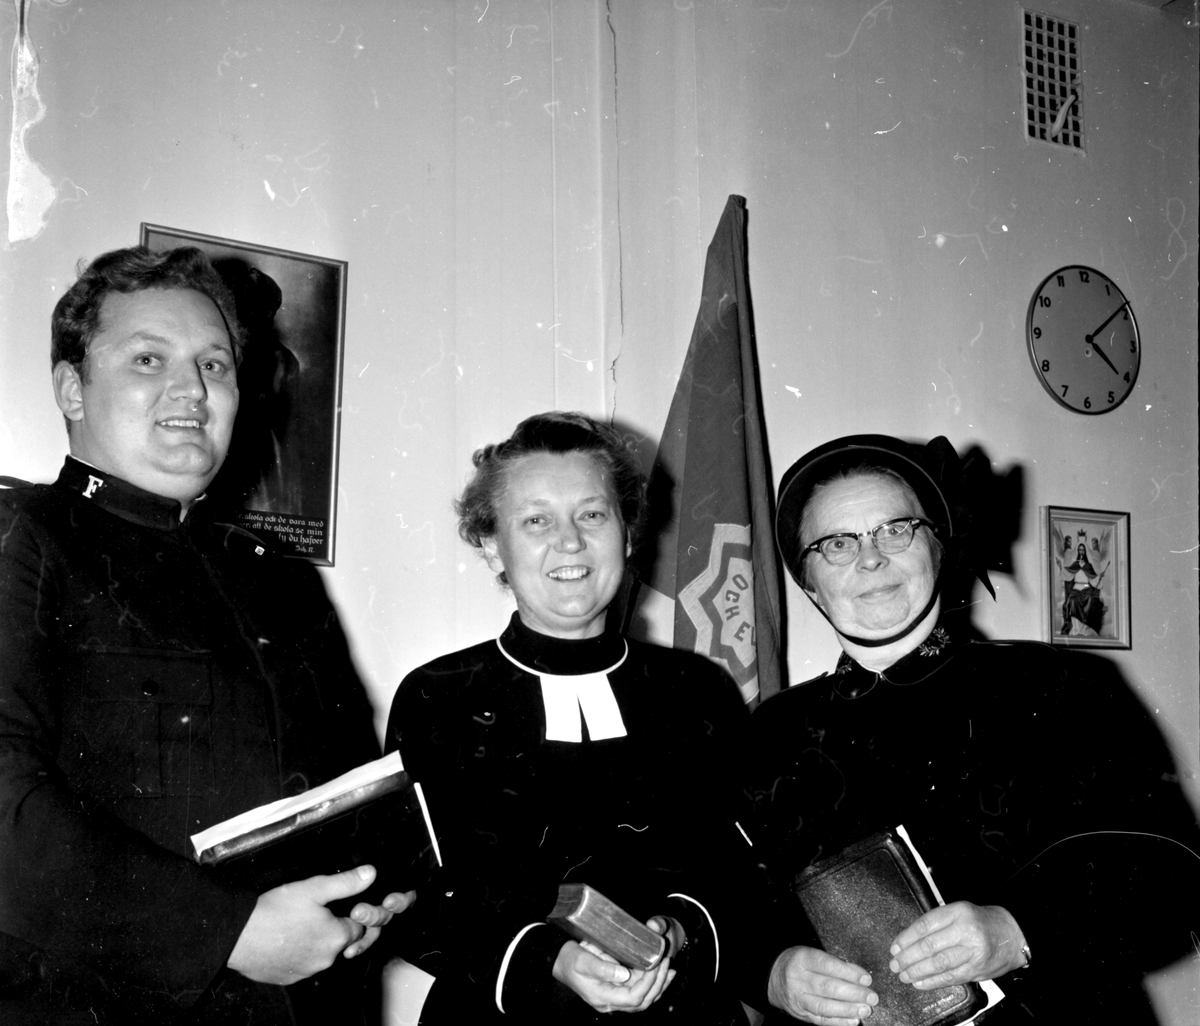 Frälsningsarmén,
Kvinnomöte i Bollnäs,
15 Okt 1965